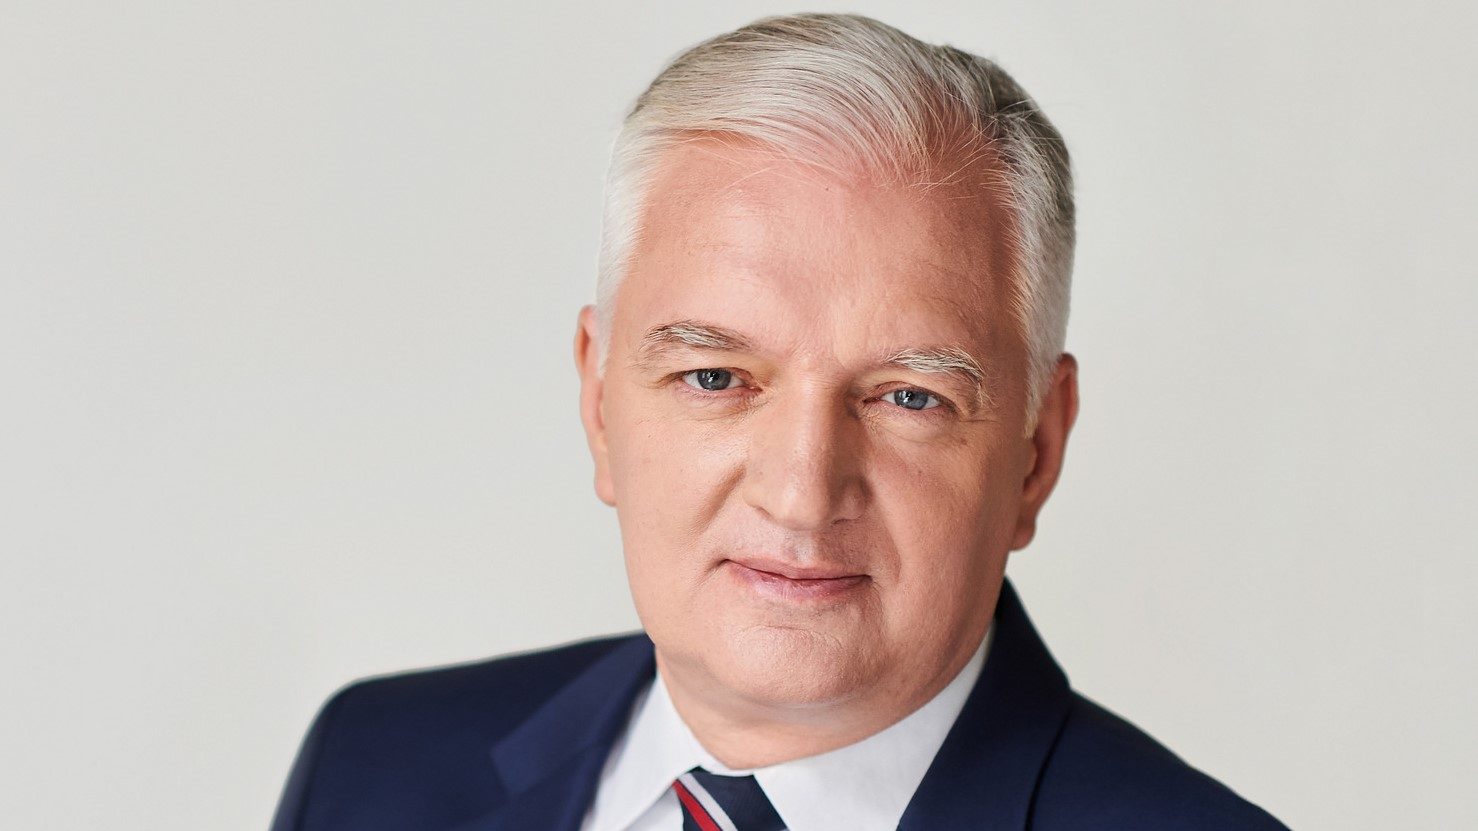 propolski.pl: Zdesperowany Gowin szuka nowej, idiotycznej drogi do polityki. Zostaje Zmasakrowany przez opozycję